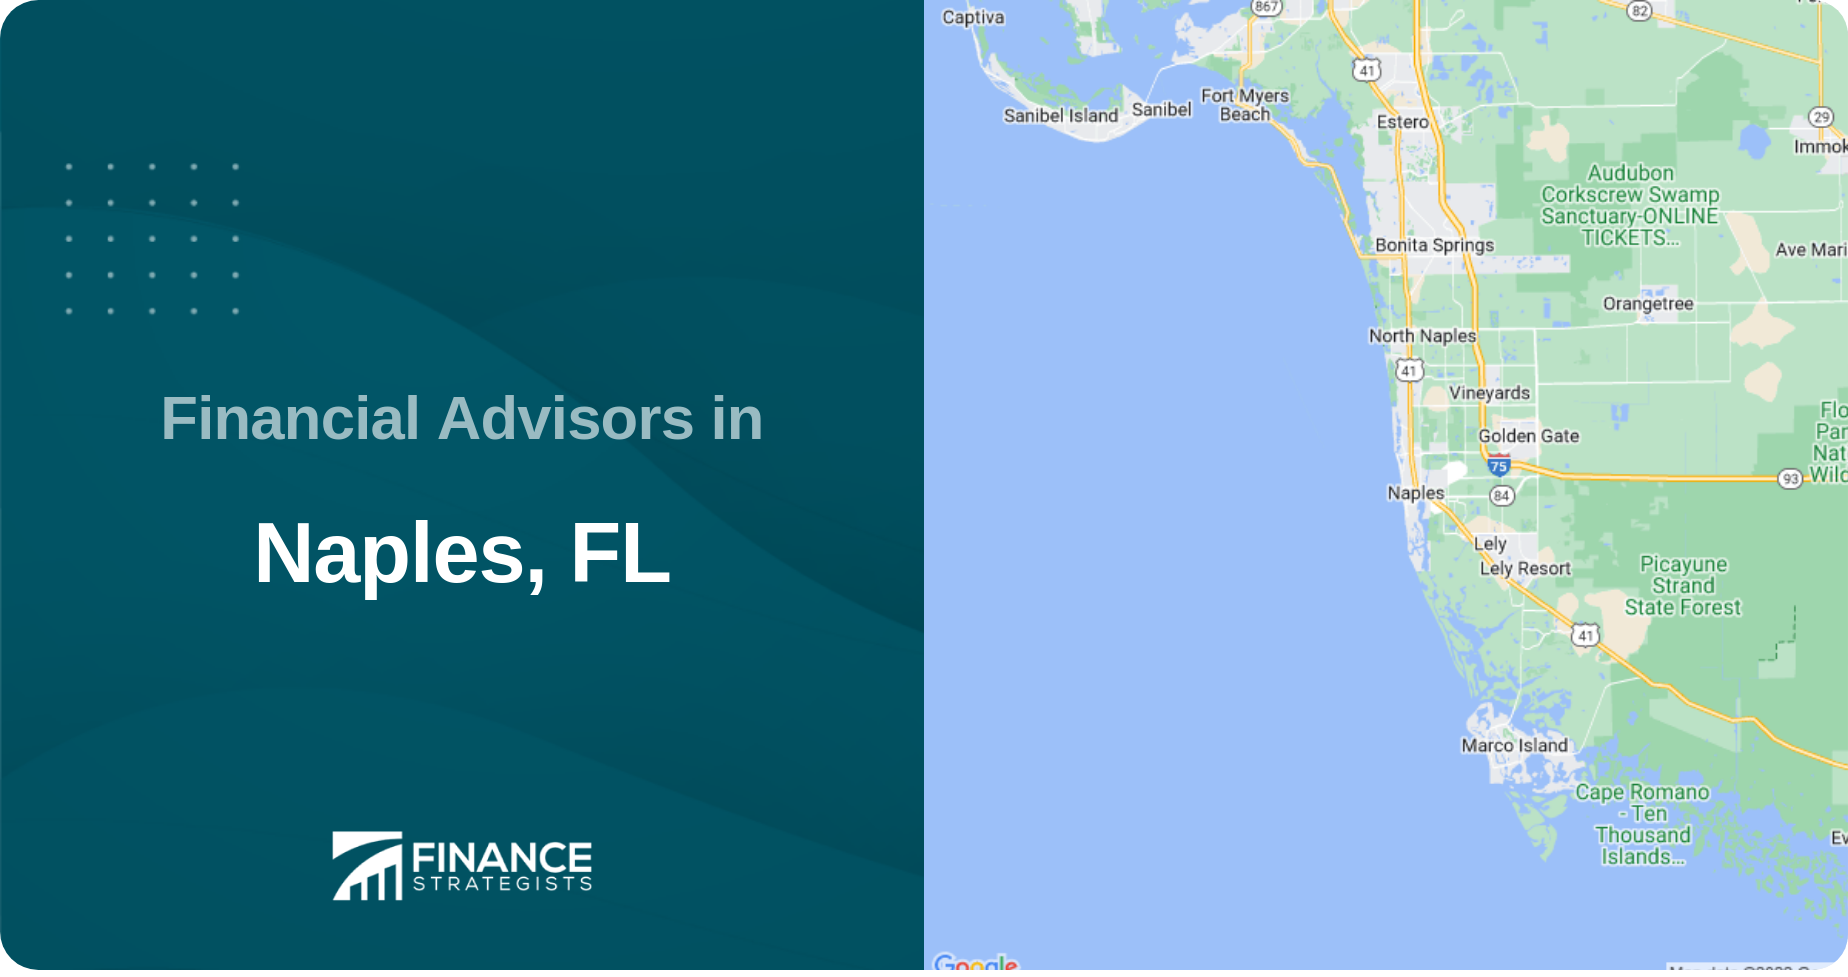 Financial Advisors in Naples, FL